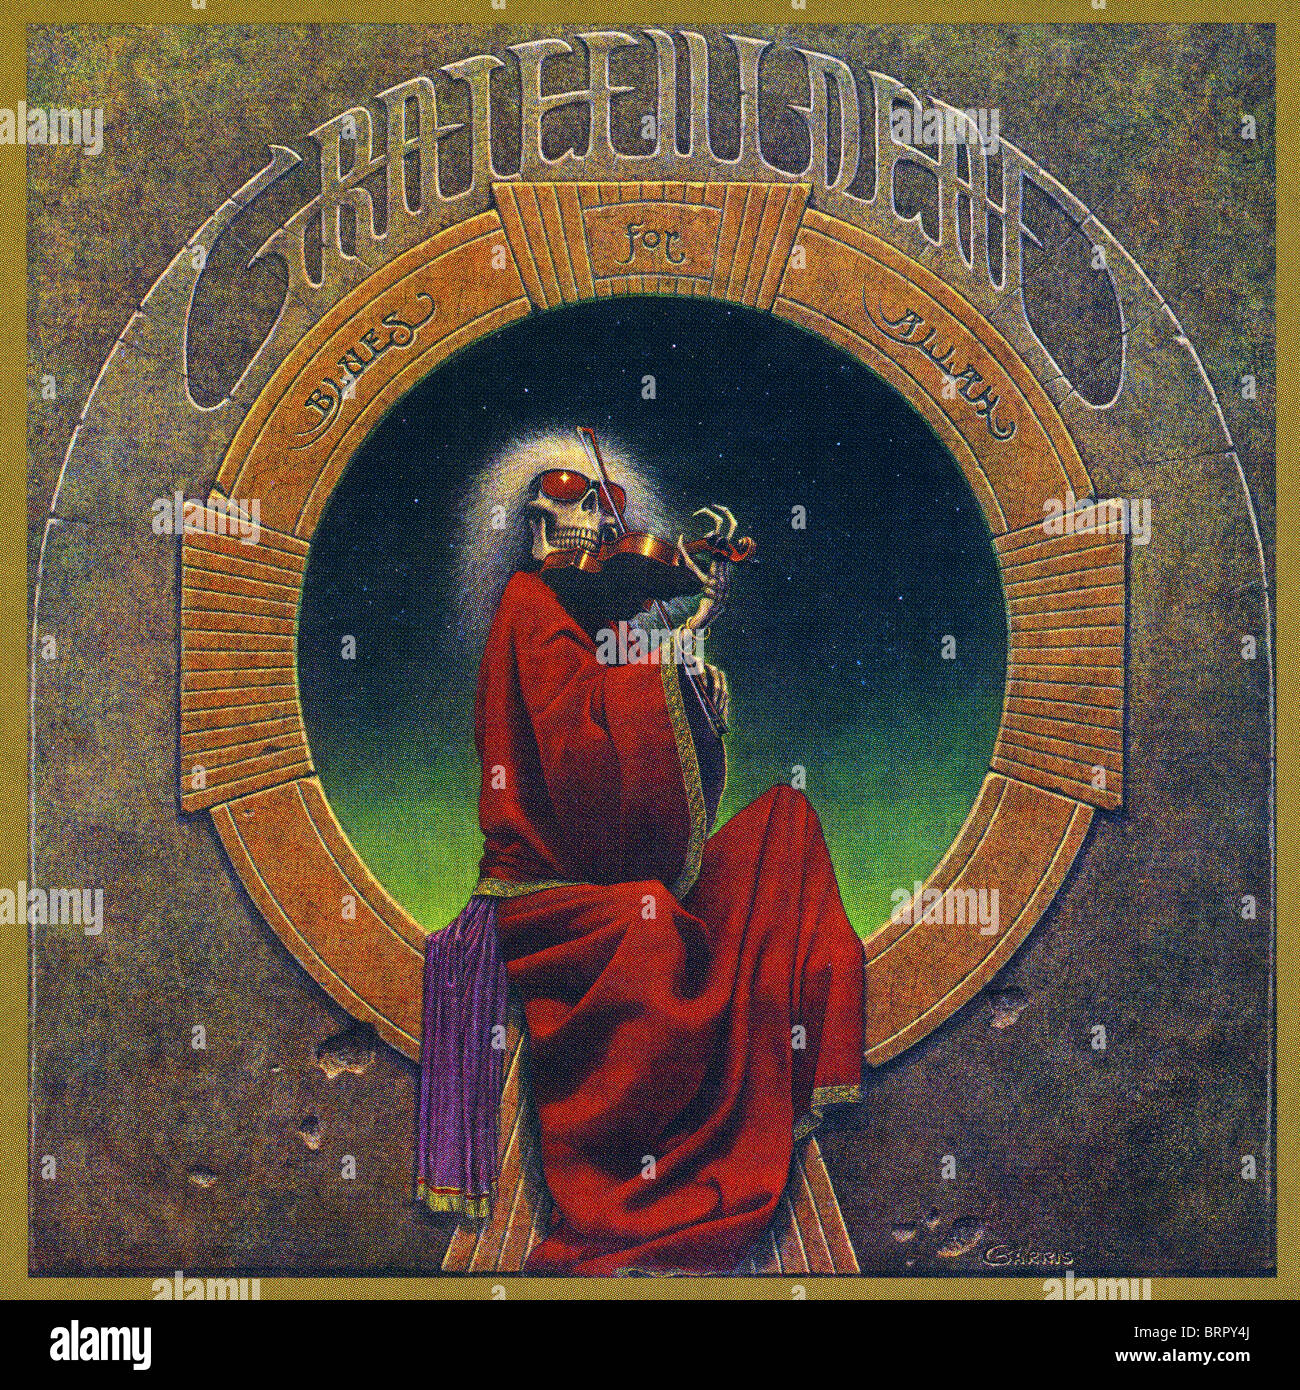 Couverture de l'album de blues pour Allah enregistré par le Grateful Dead publié par Grateful Dead Records en 1975 Banque D'Images